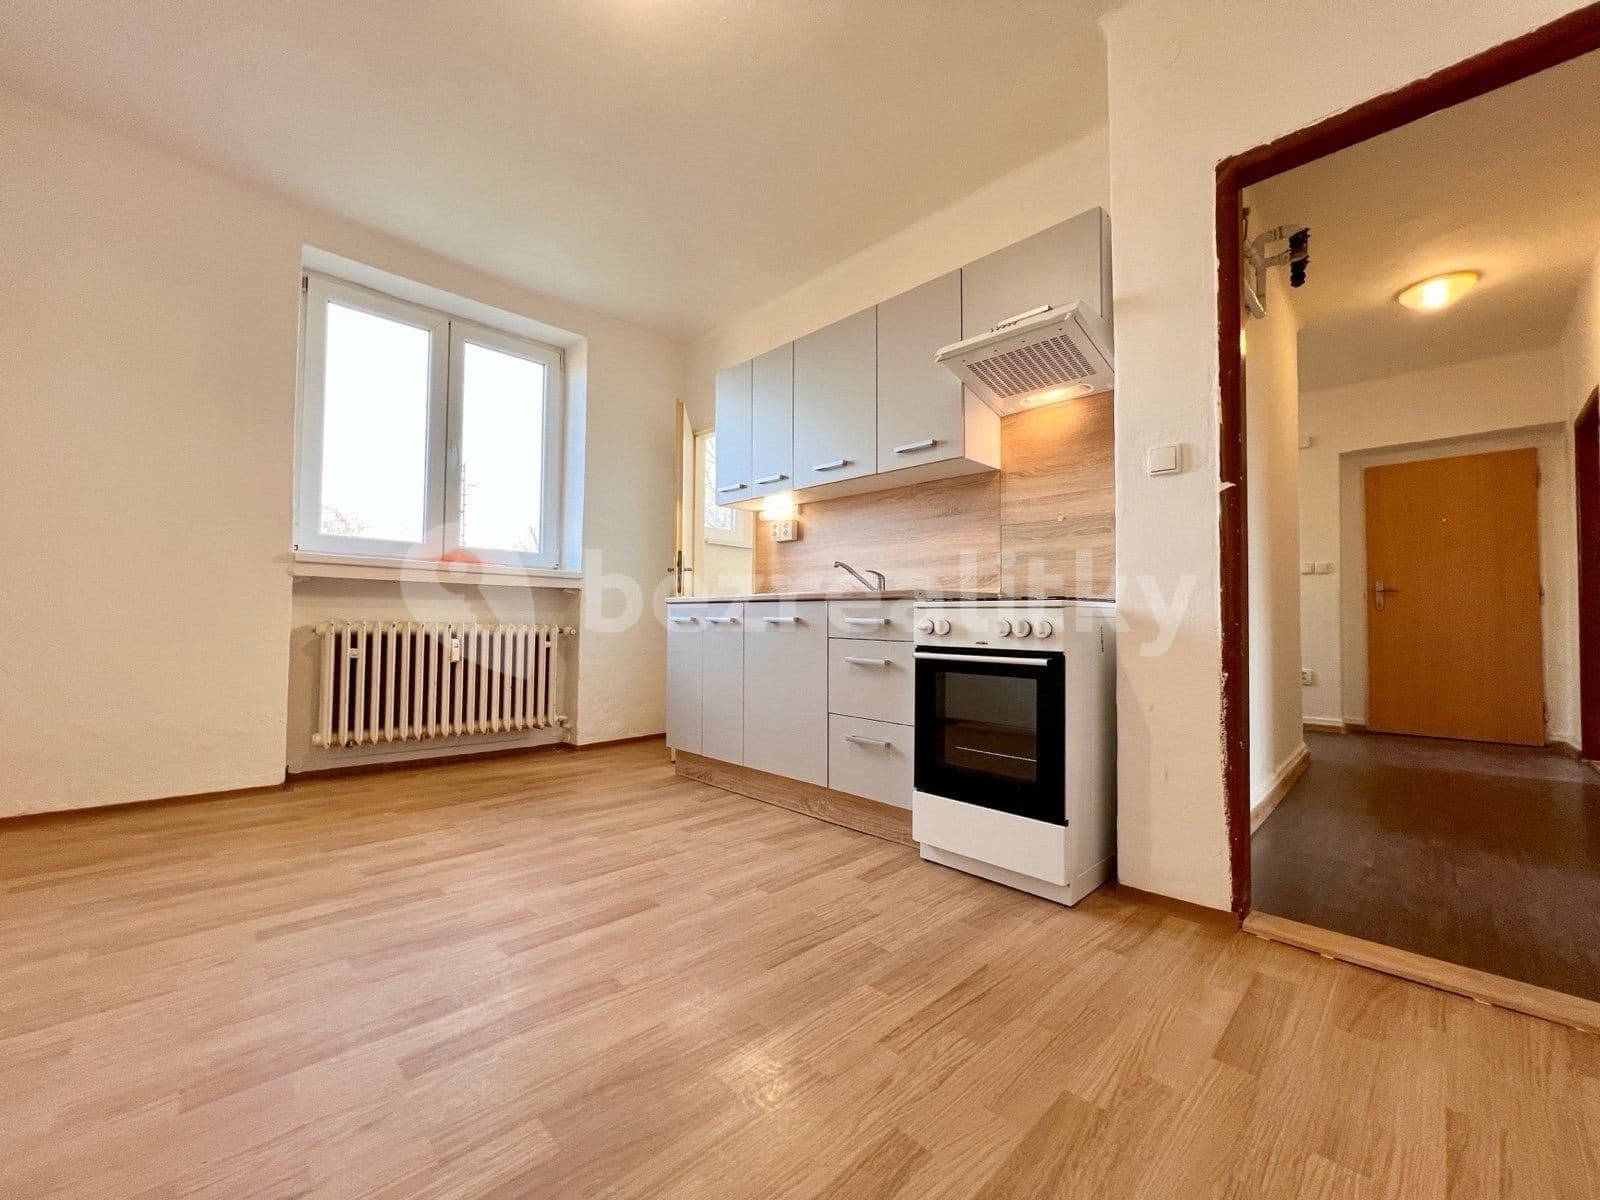 2 bedroom flat to rent, 60 m², Technická, Ostrava, Moravskoslezský Region